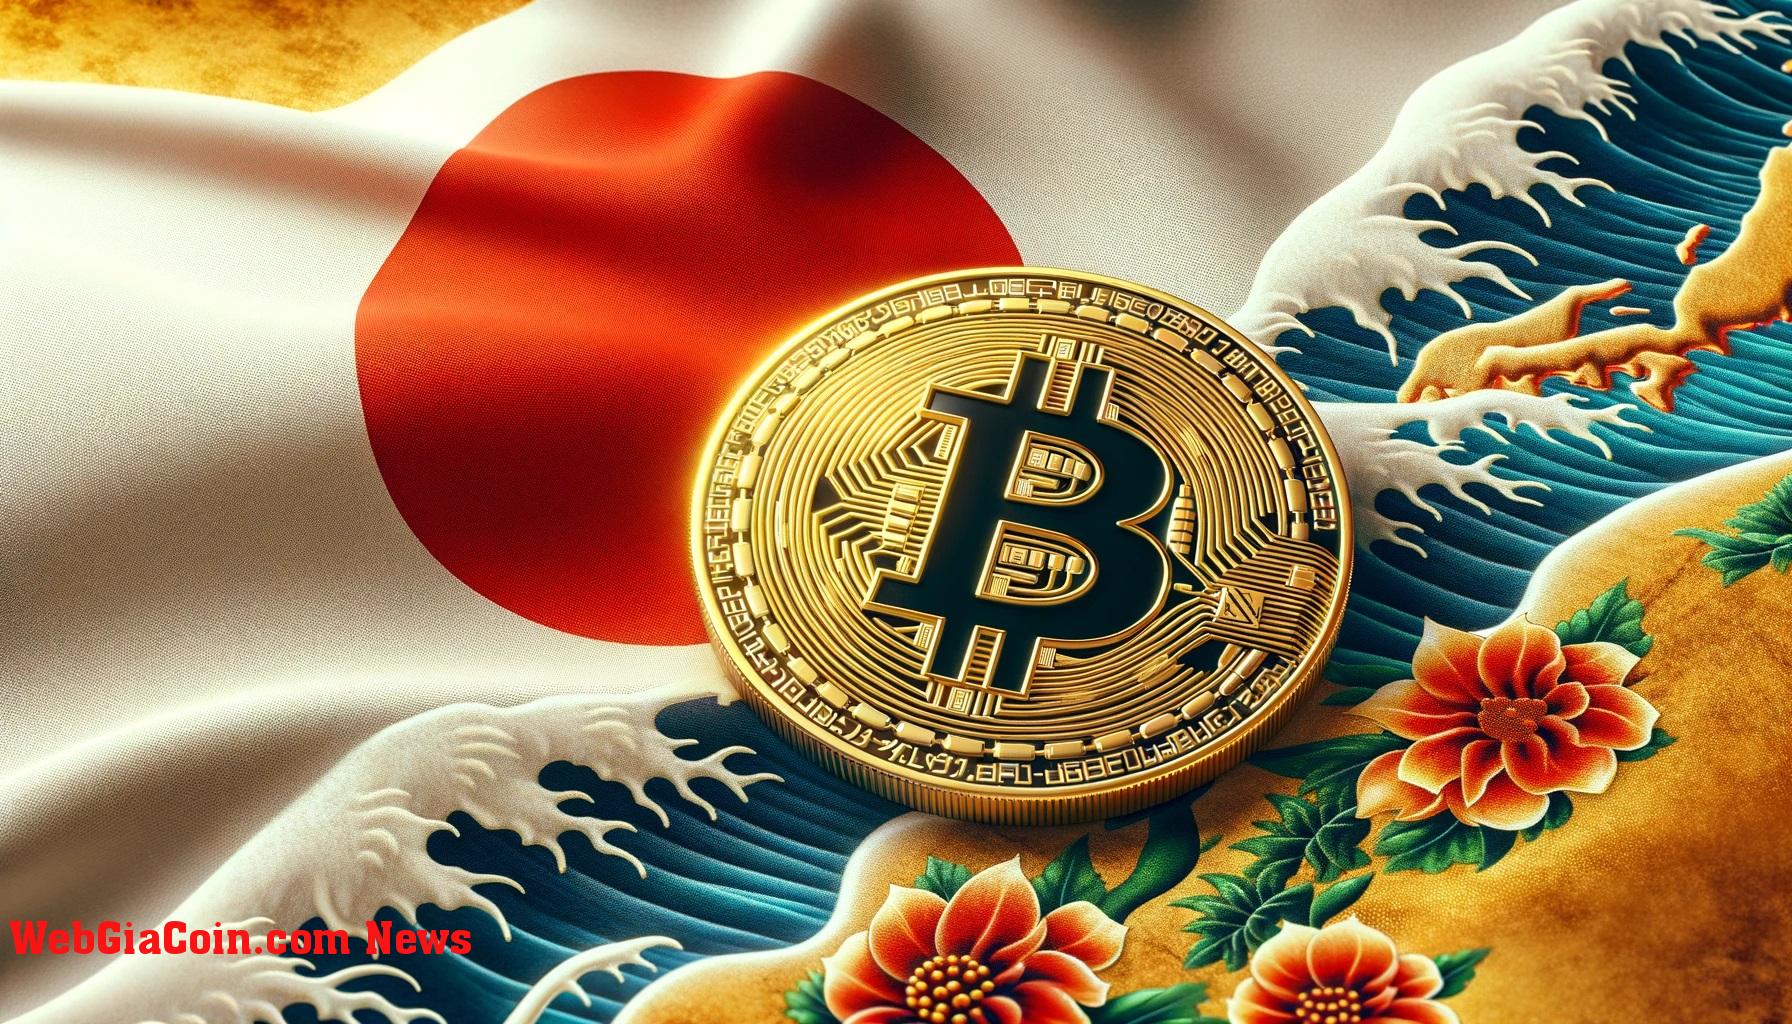 Quỹ hưu trí trị giá 1,5 nghìn tỷ USD của Nhật Bản đánh giá Bitcoin